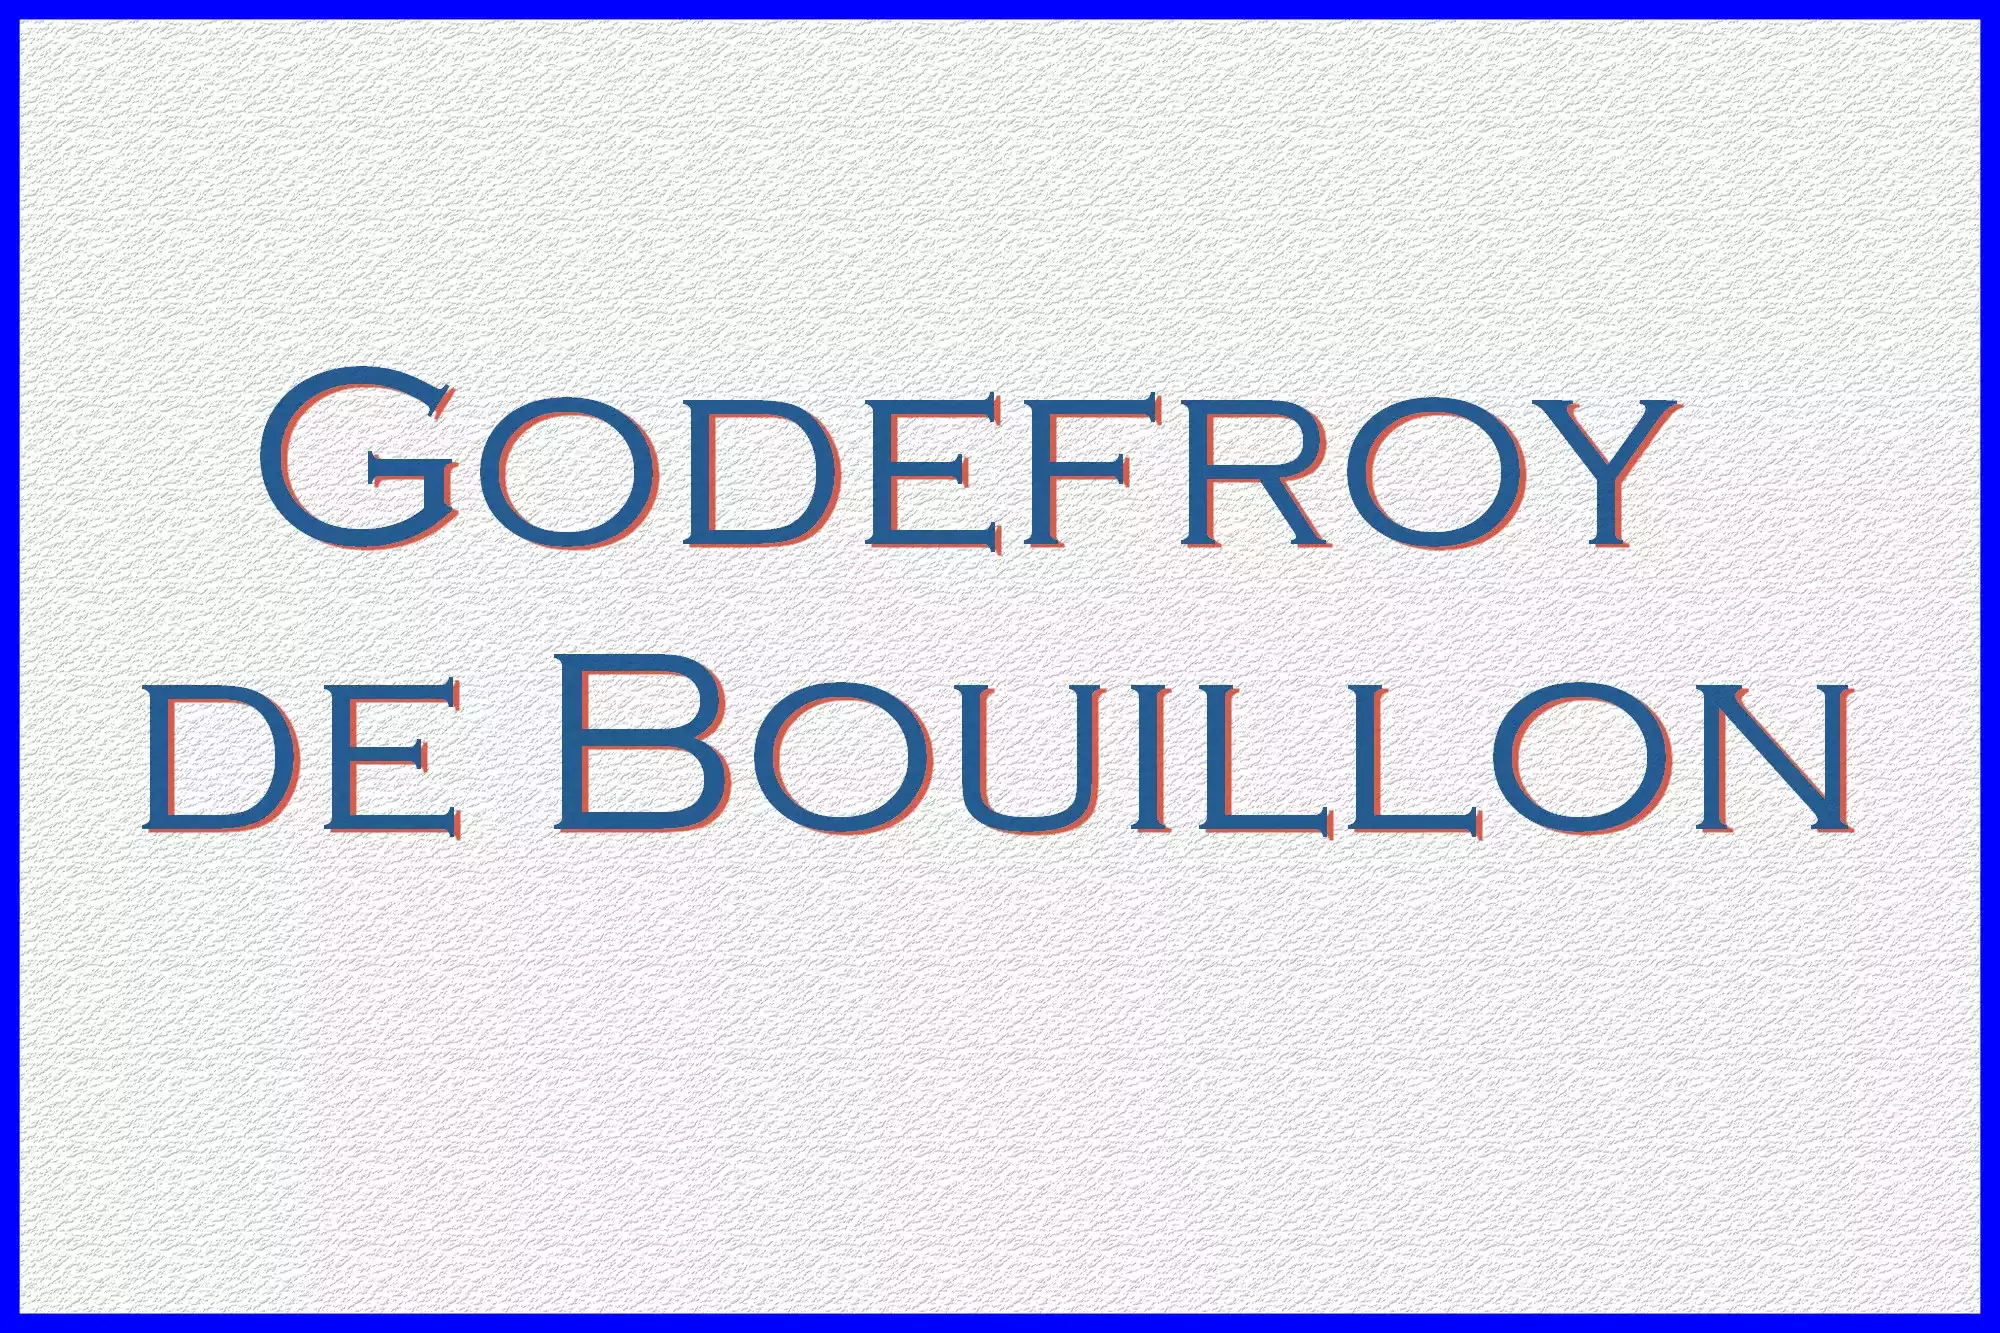 Godefroy de Bouillon, fut le chef de la première croisade